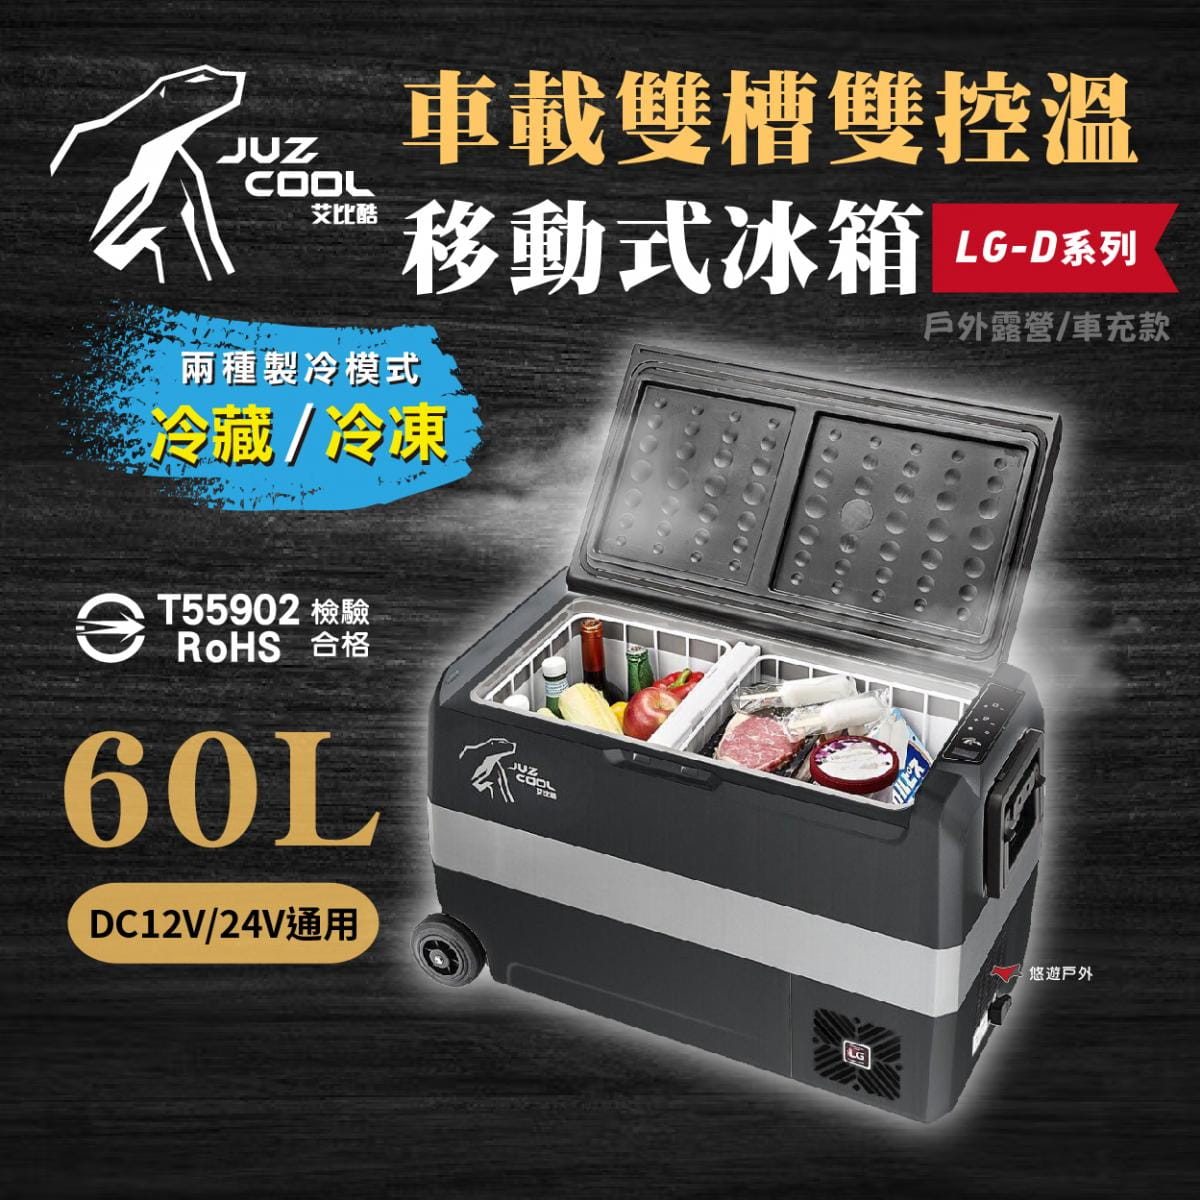 【艾比酷】雙槽雙溫控車用冰箱LG-D60 (悠遊戶外) 1